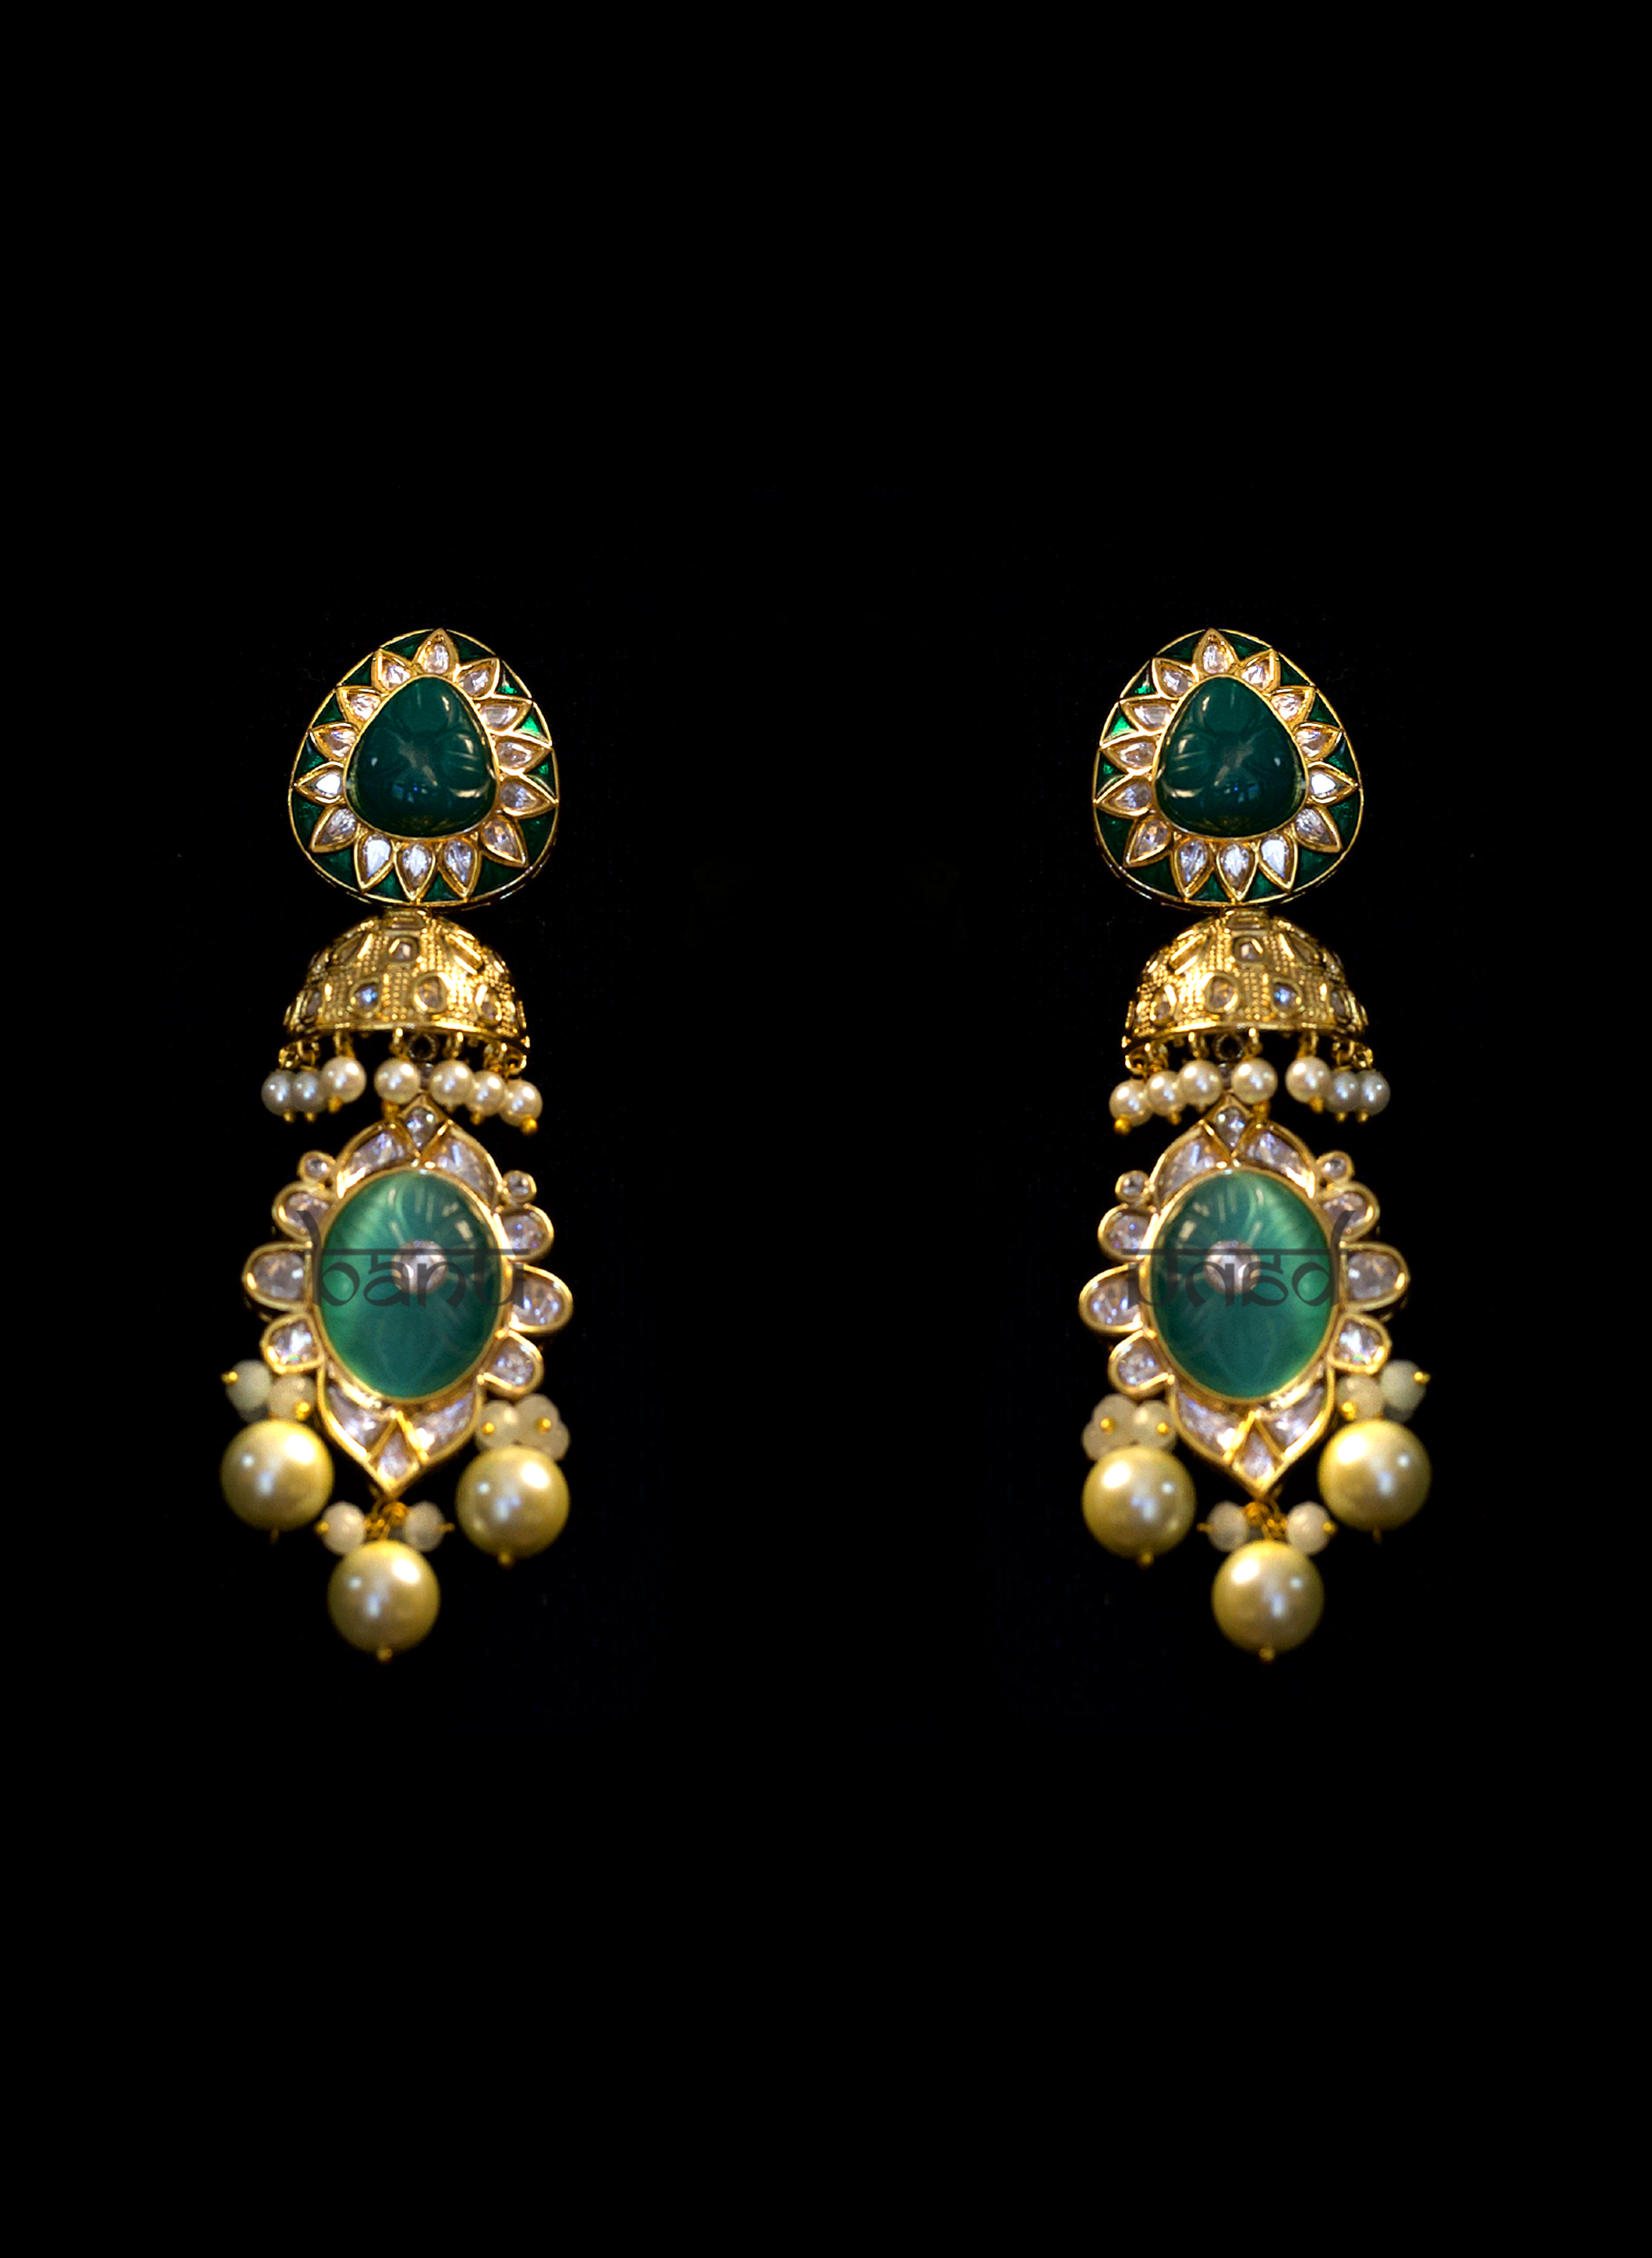 Golden Lotus Jewelry Set